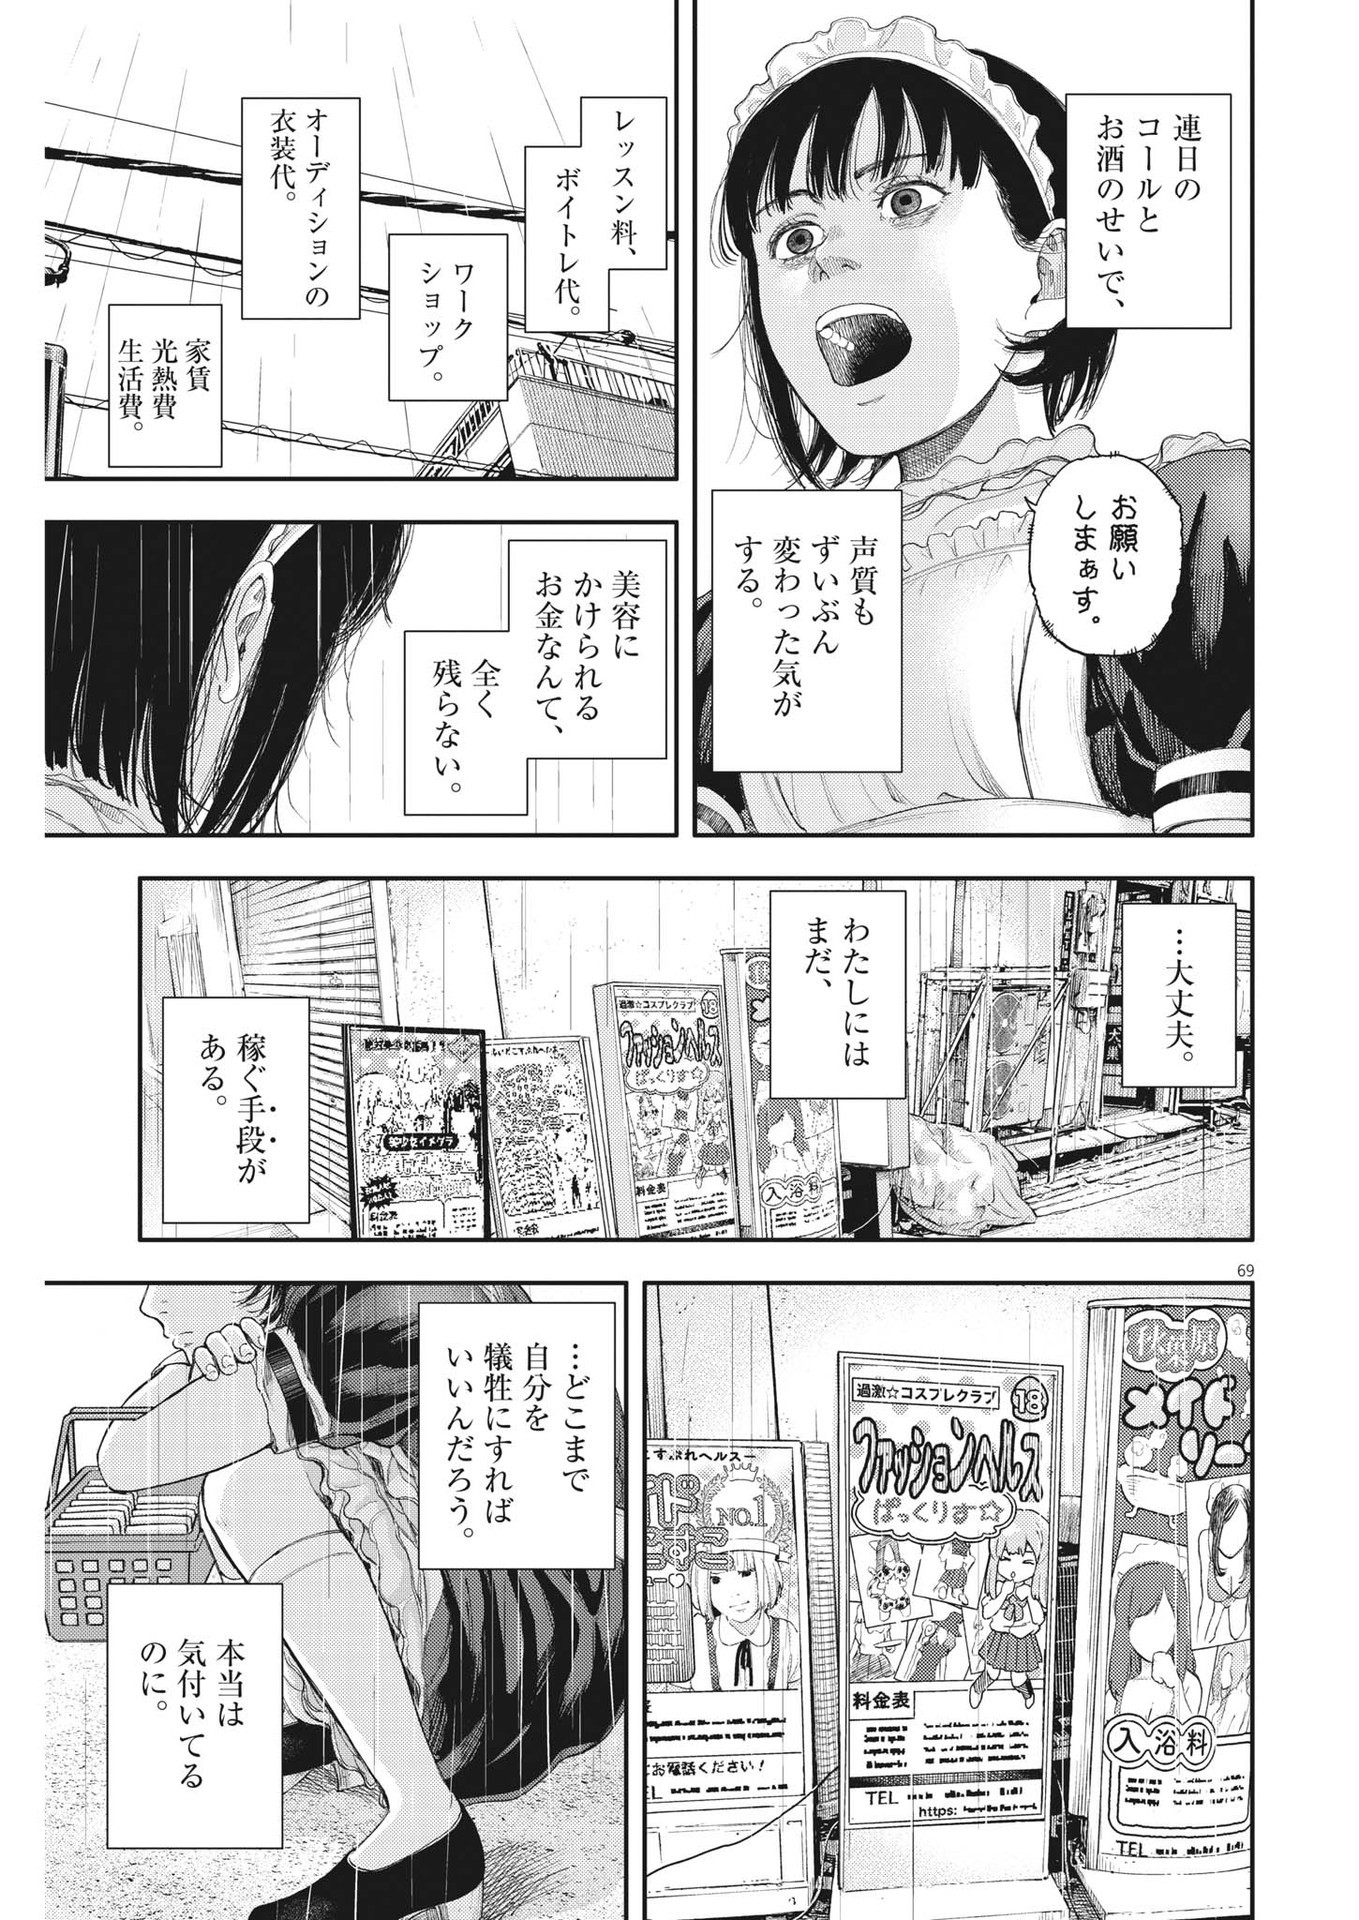 Yumenashi-sensei no Shinroshidou - Chapter 1 - Page 69